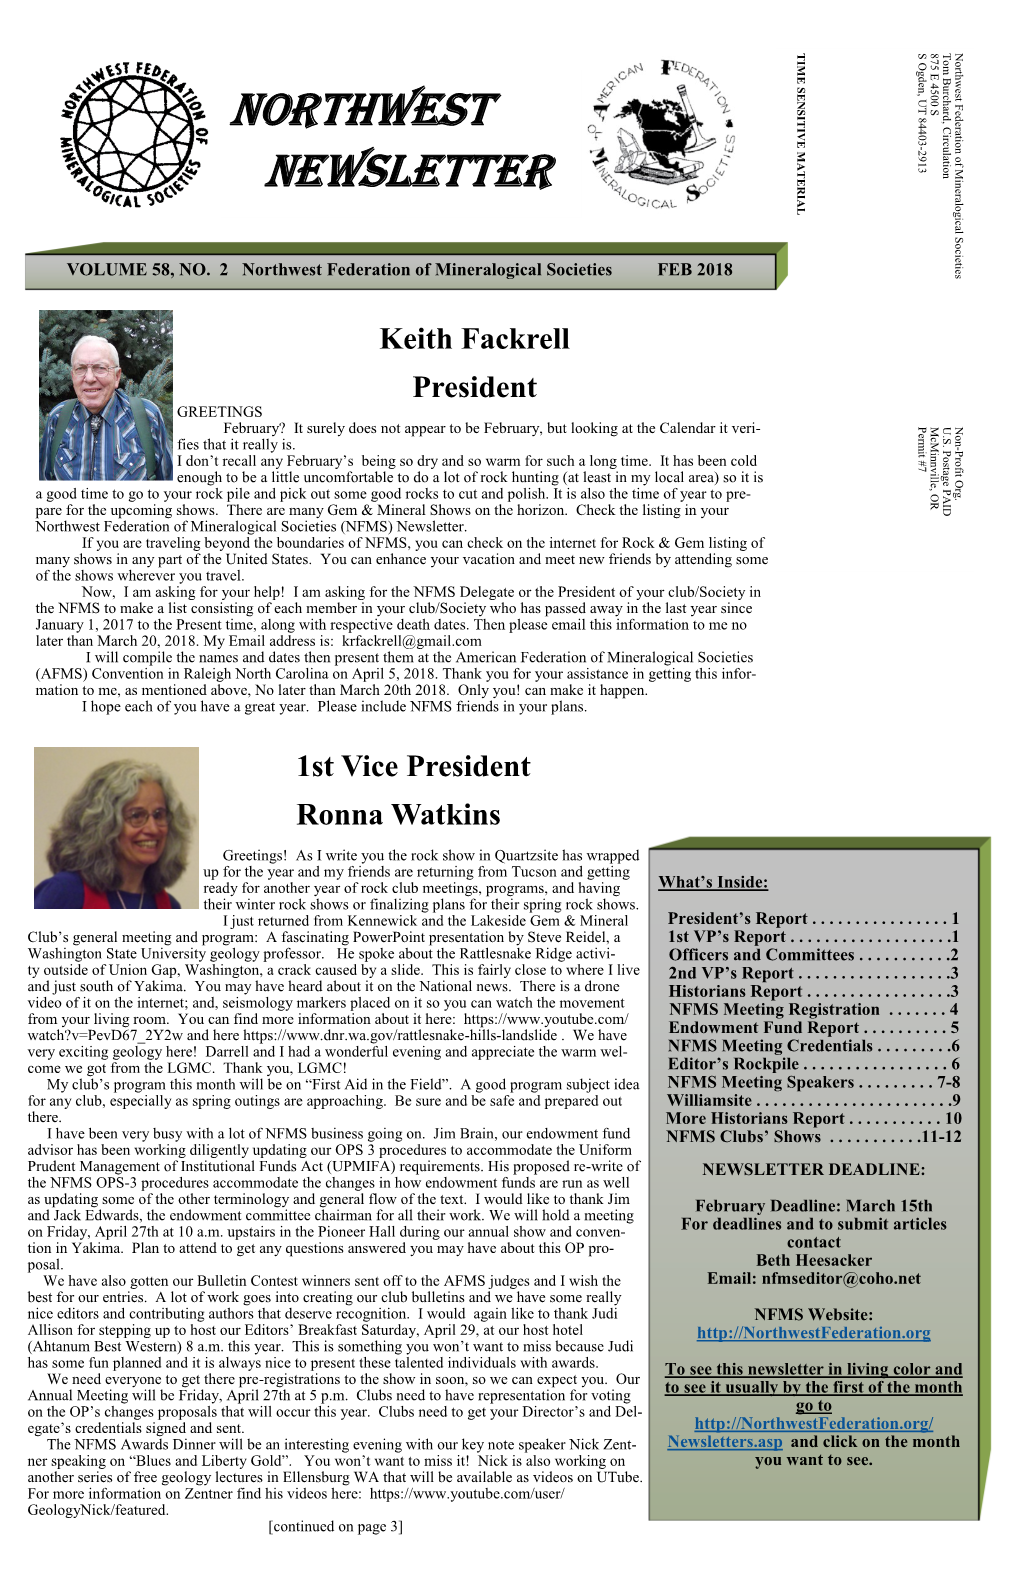 Northwest Newsletter Vol.58 No